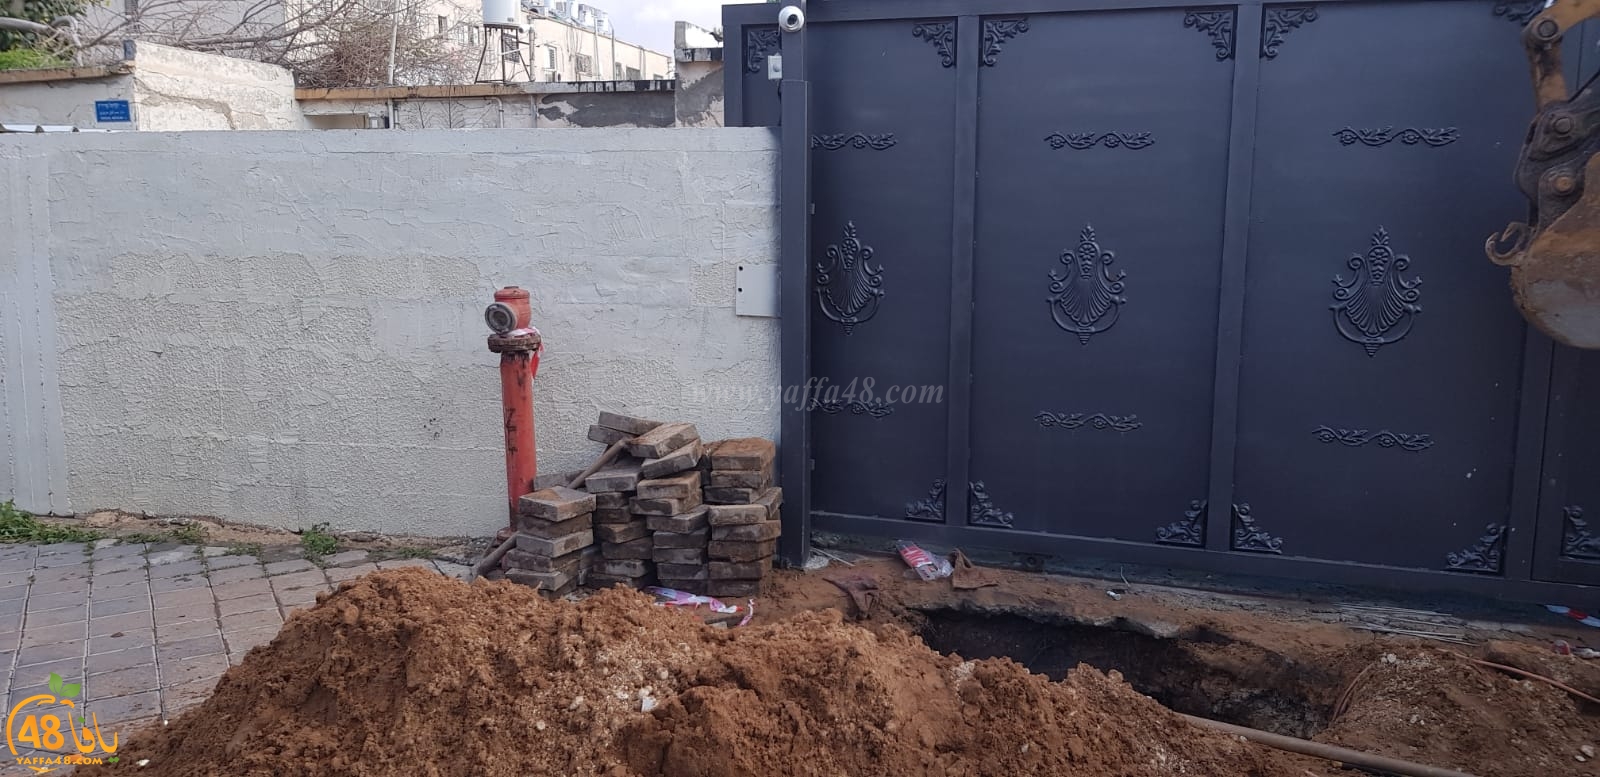 يافا: انقطاع المياه عن عدد من بيوت المواطنين اثر انفجار أنبوب رئيسي